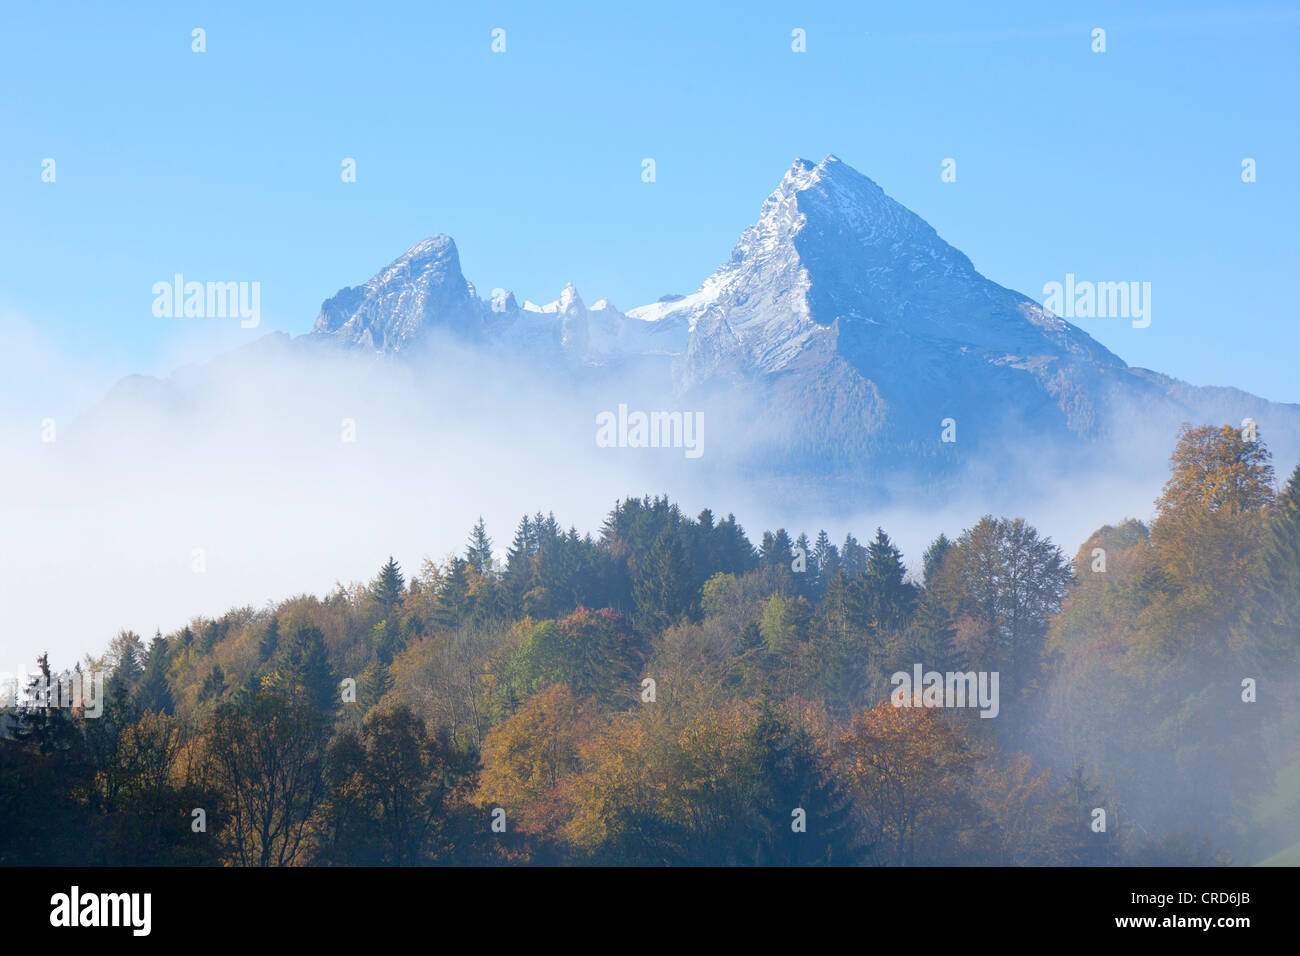 La foresta e la nebbia nella parte anteriore del Watzmann, sulle Alpi di Berchtesgaden, Berchtesgadener Land Baviera, Germania, Europa Foto Stock